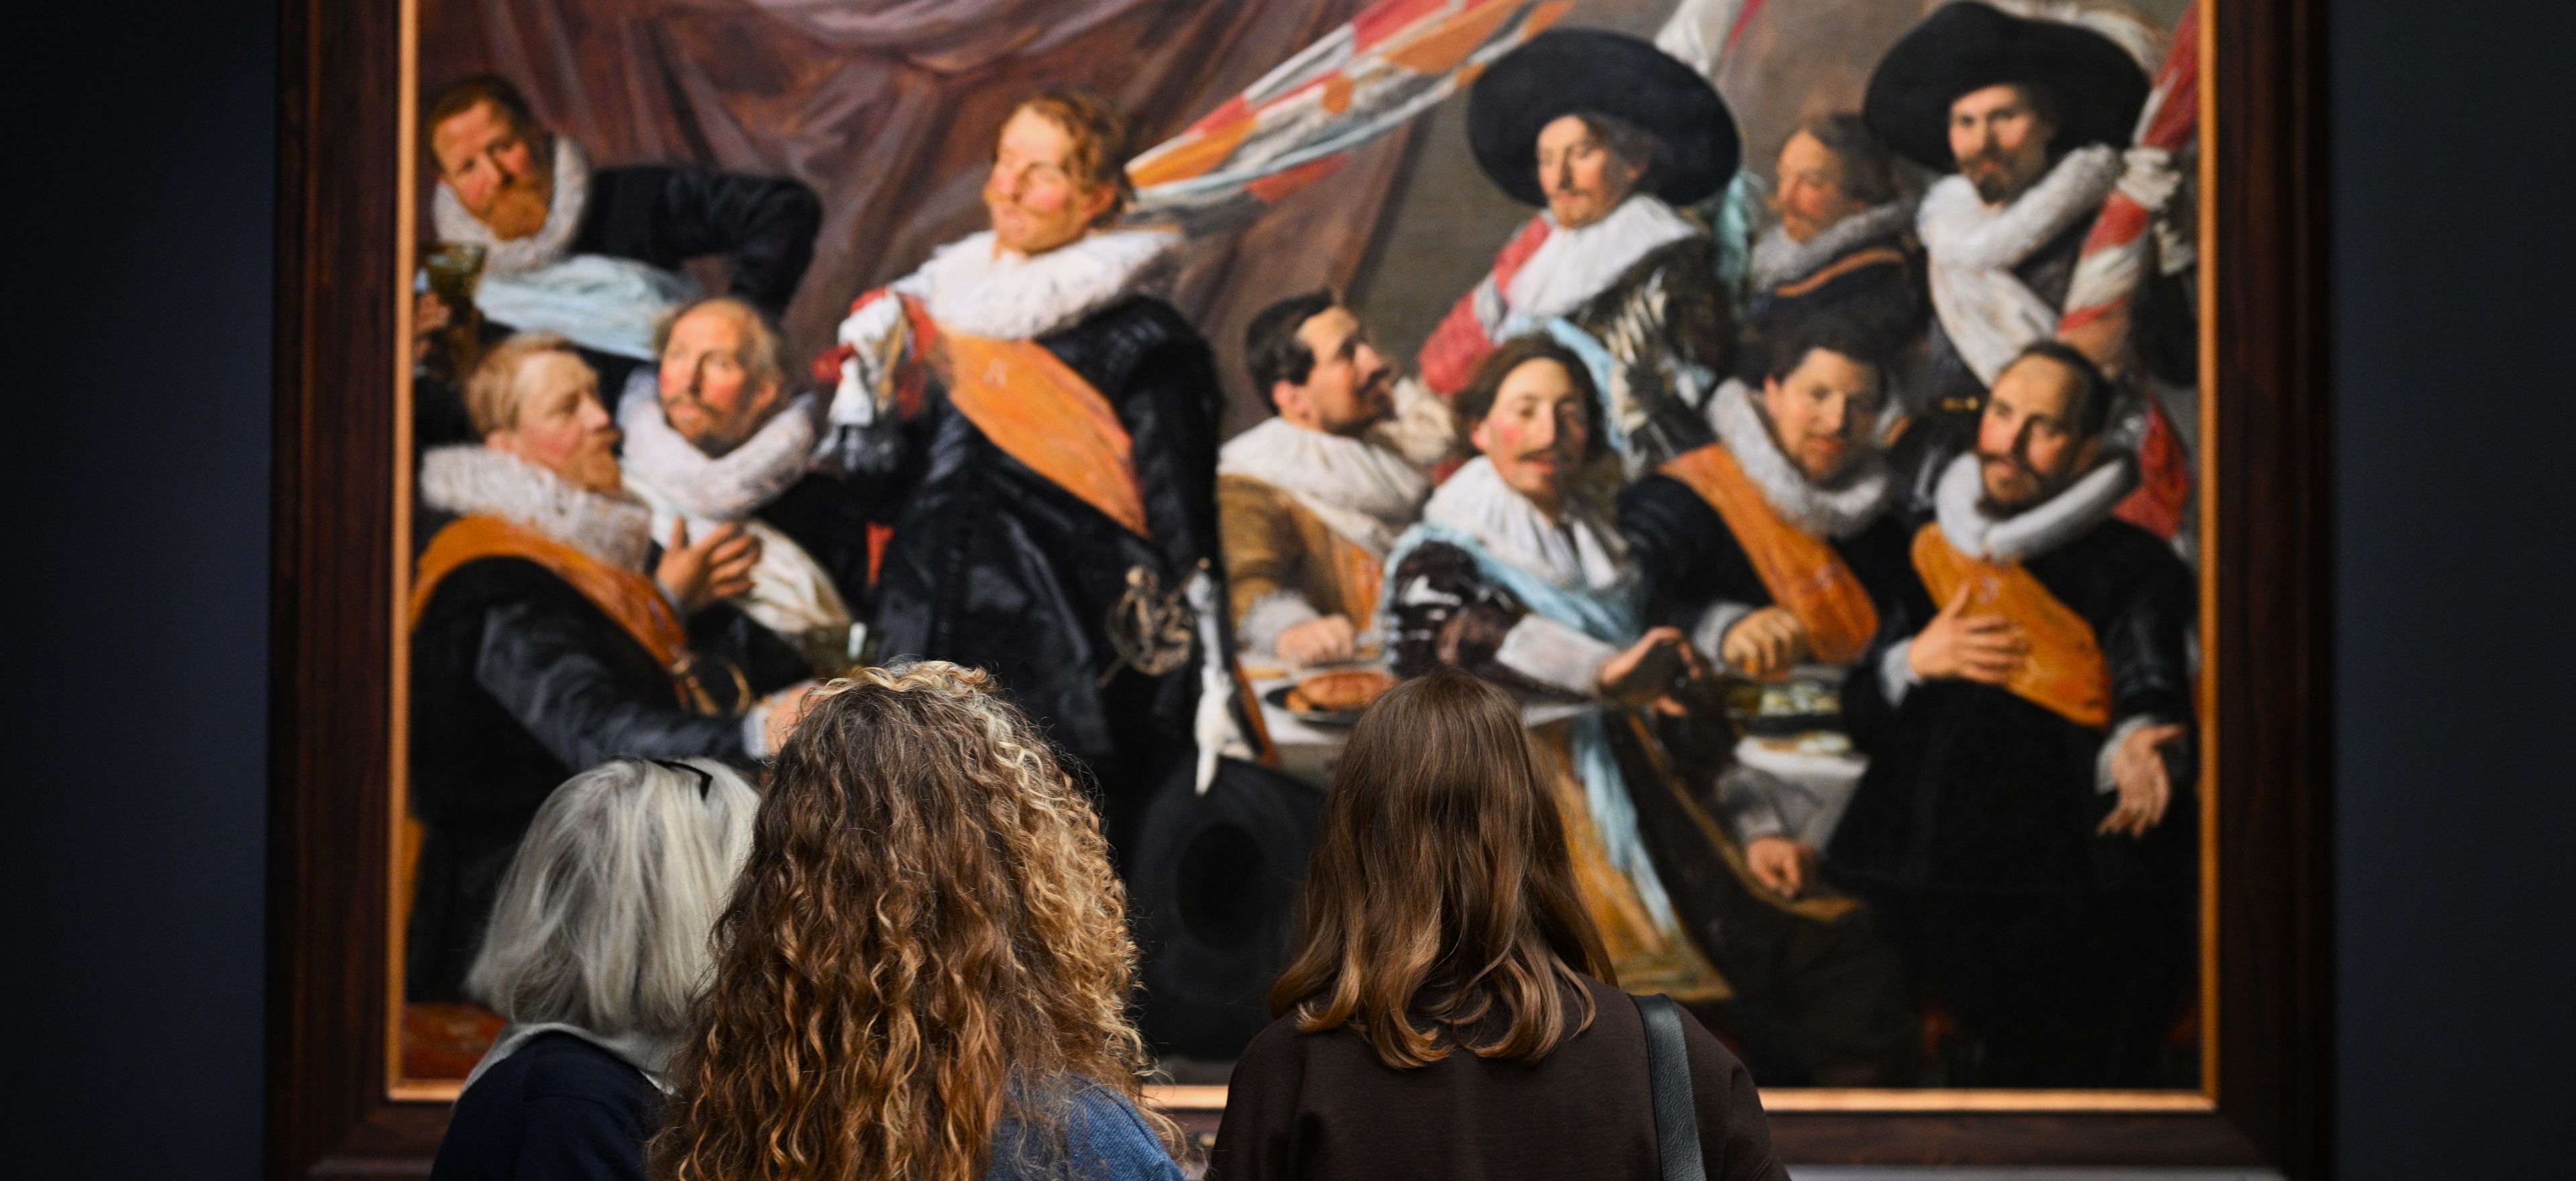 Drie vrouwelijke bezoekers bekijken een van de schuttersstukken van Frans Hals in het Frans Hals Museum.